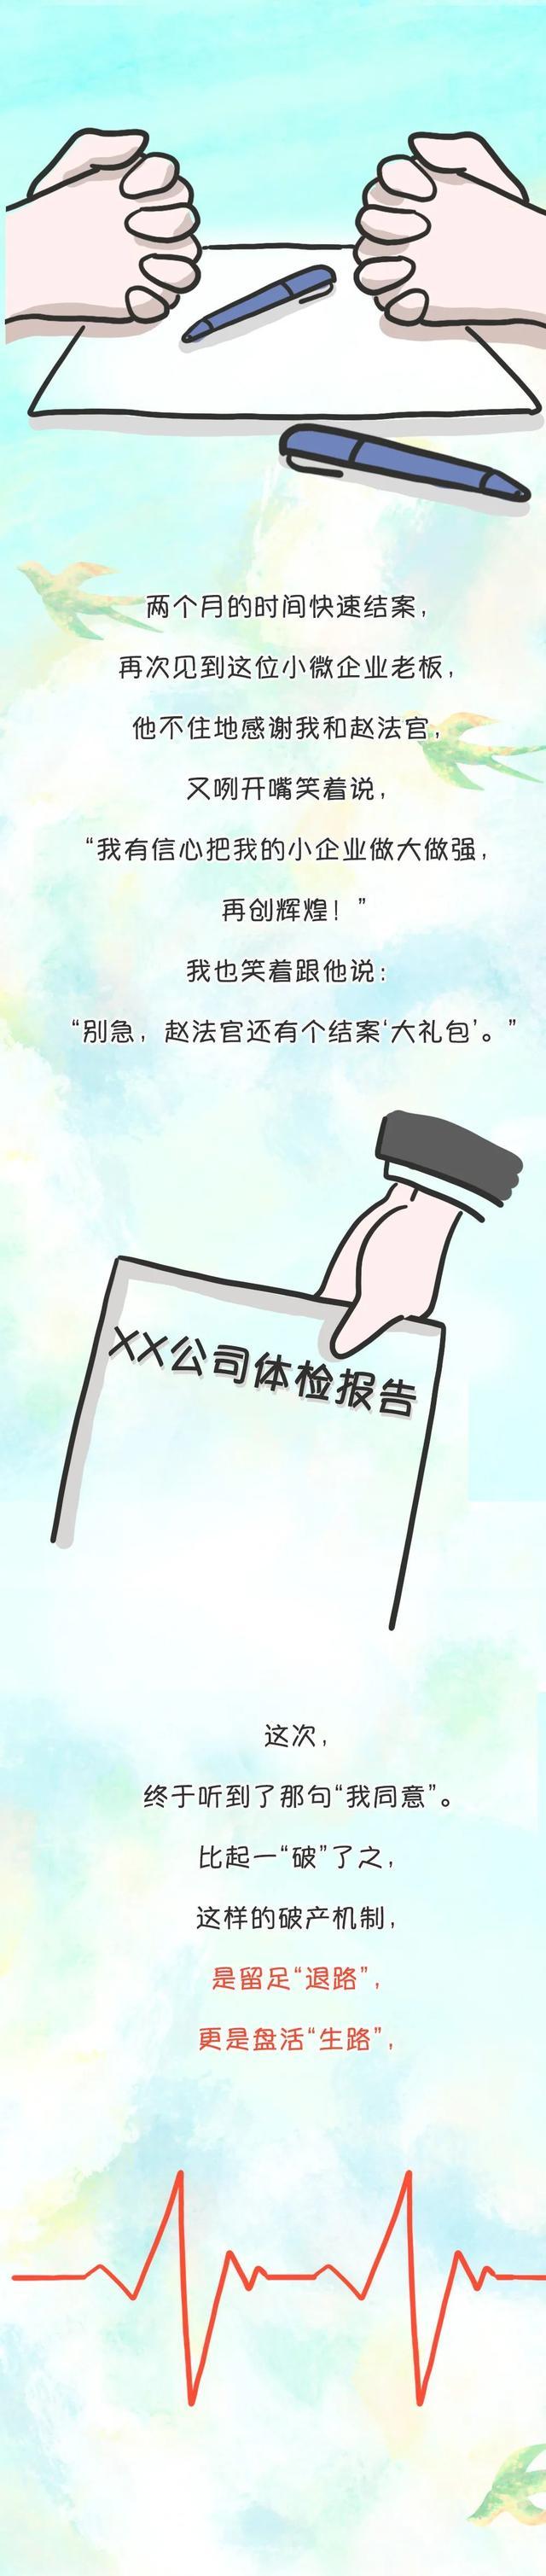 点击上方卡片关注“上海高院”公众号